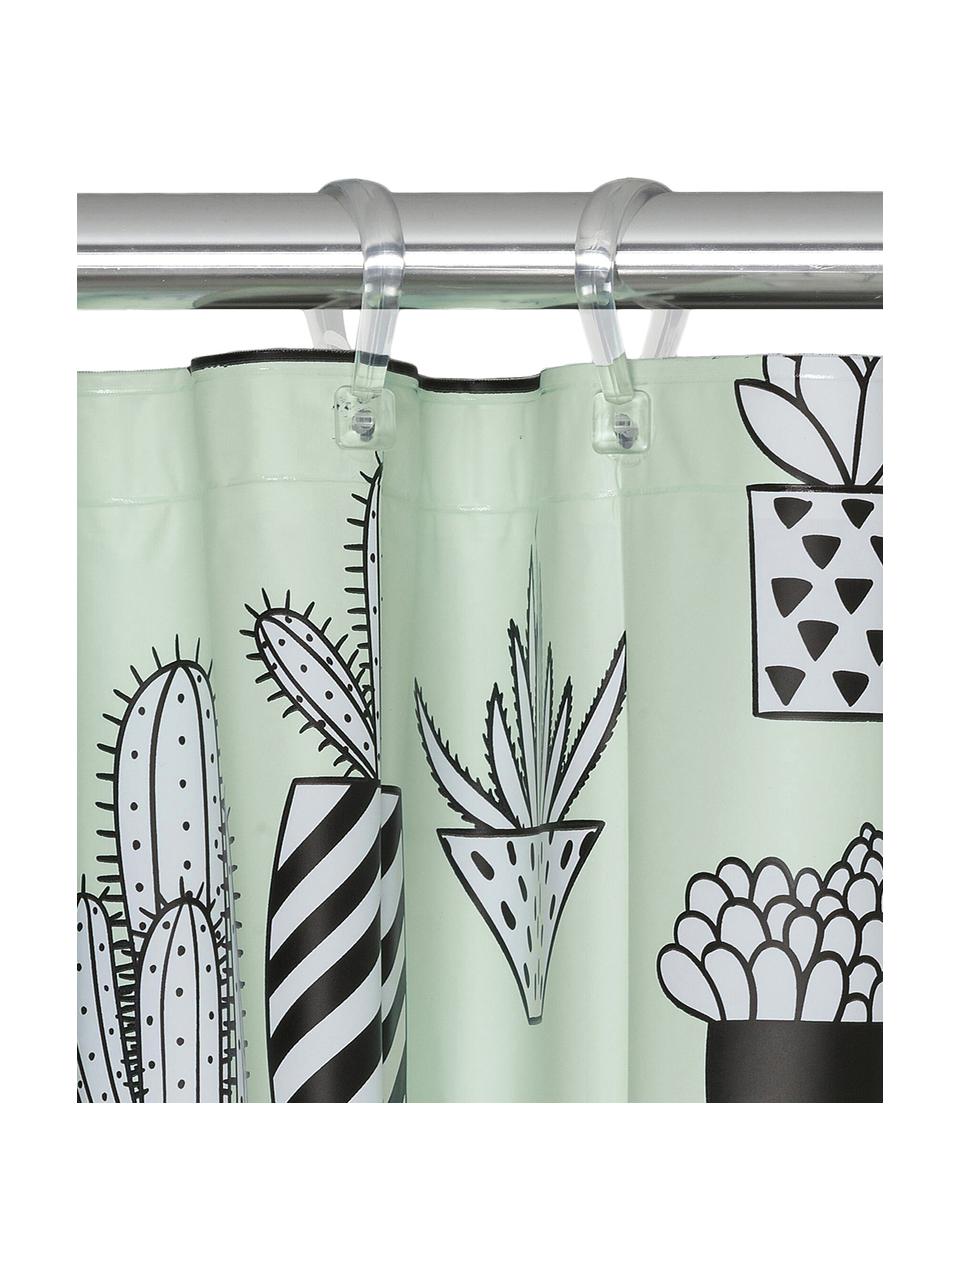 Duschvorhang Cactus mit Kaktus-Print, Kunststoff (PEVA), wasserdicht, Grün, Schwarz, Weiß, 180 x 200 cm